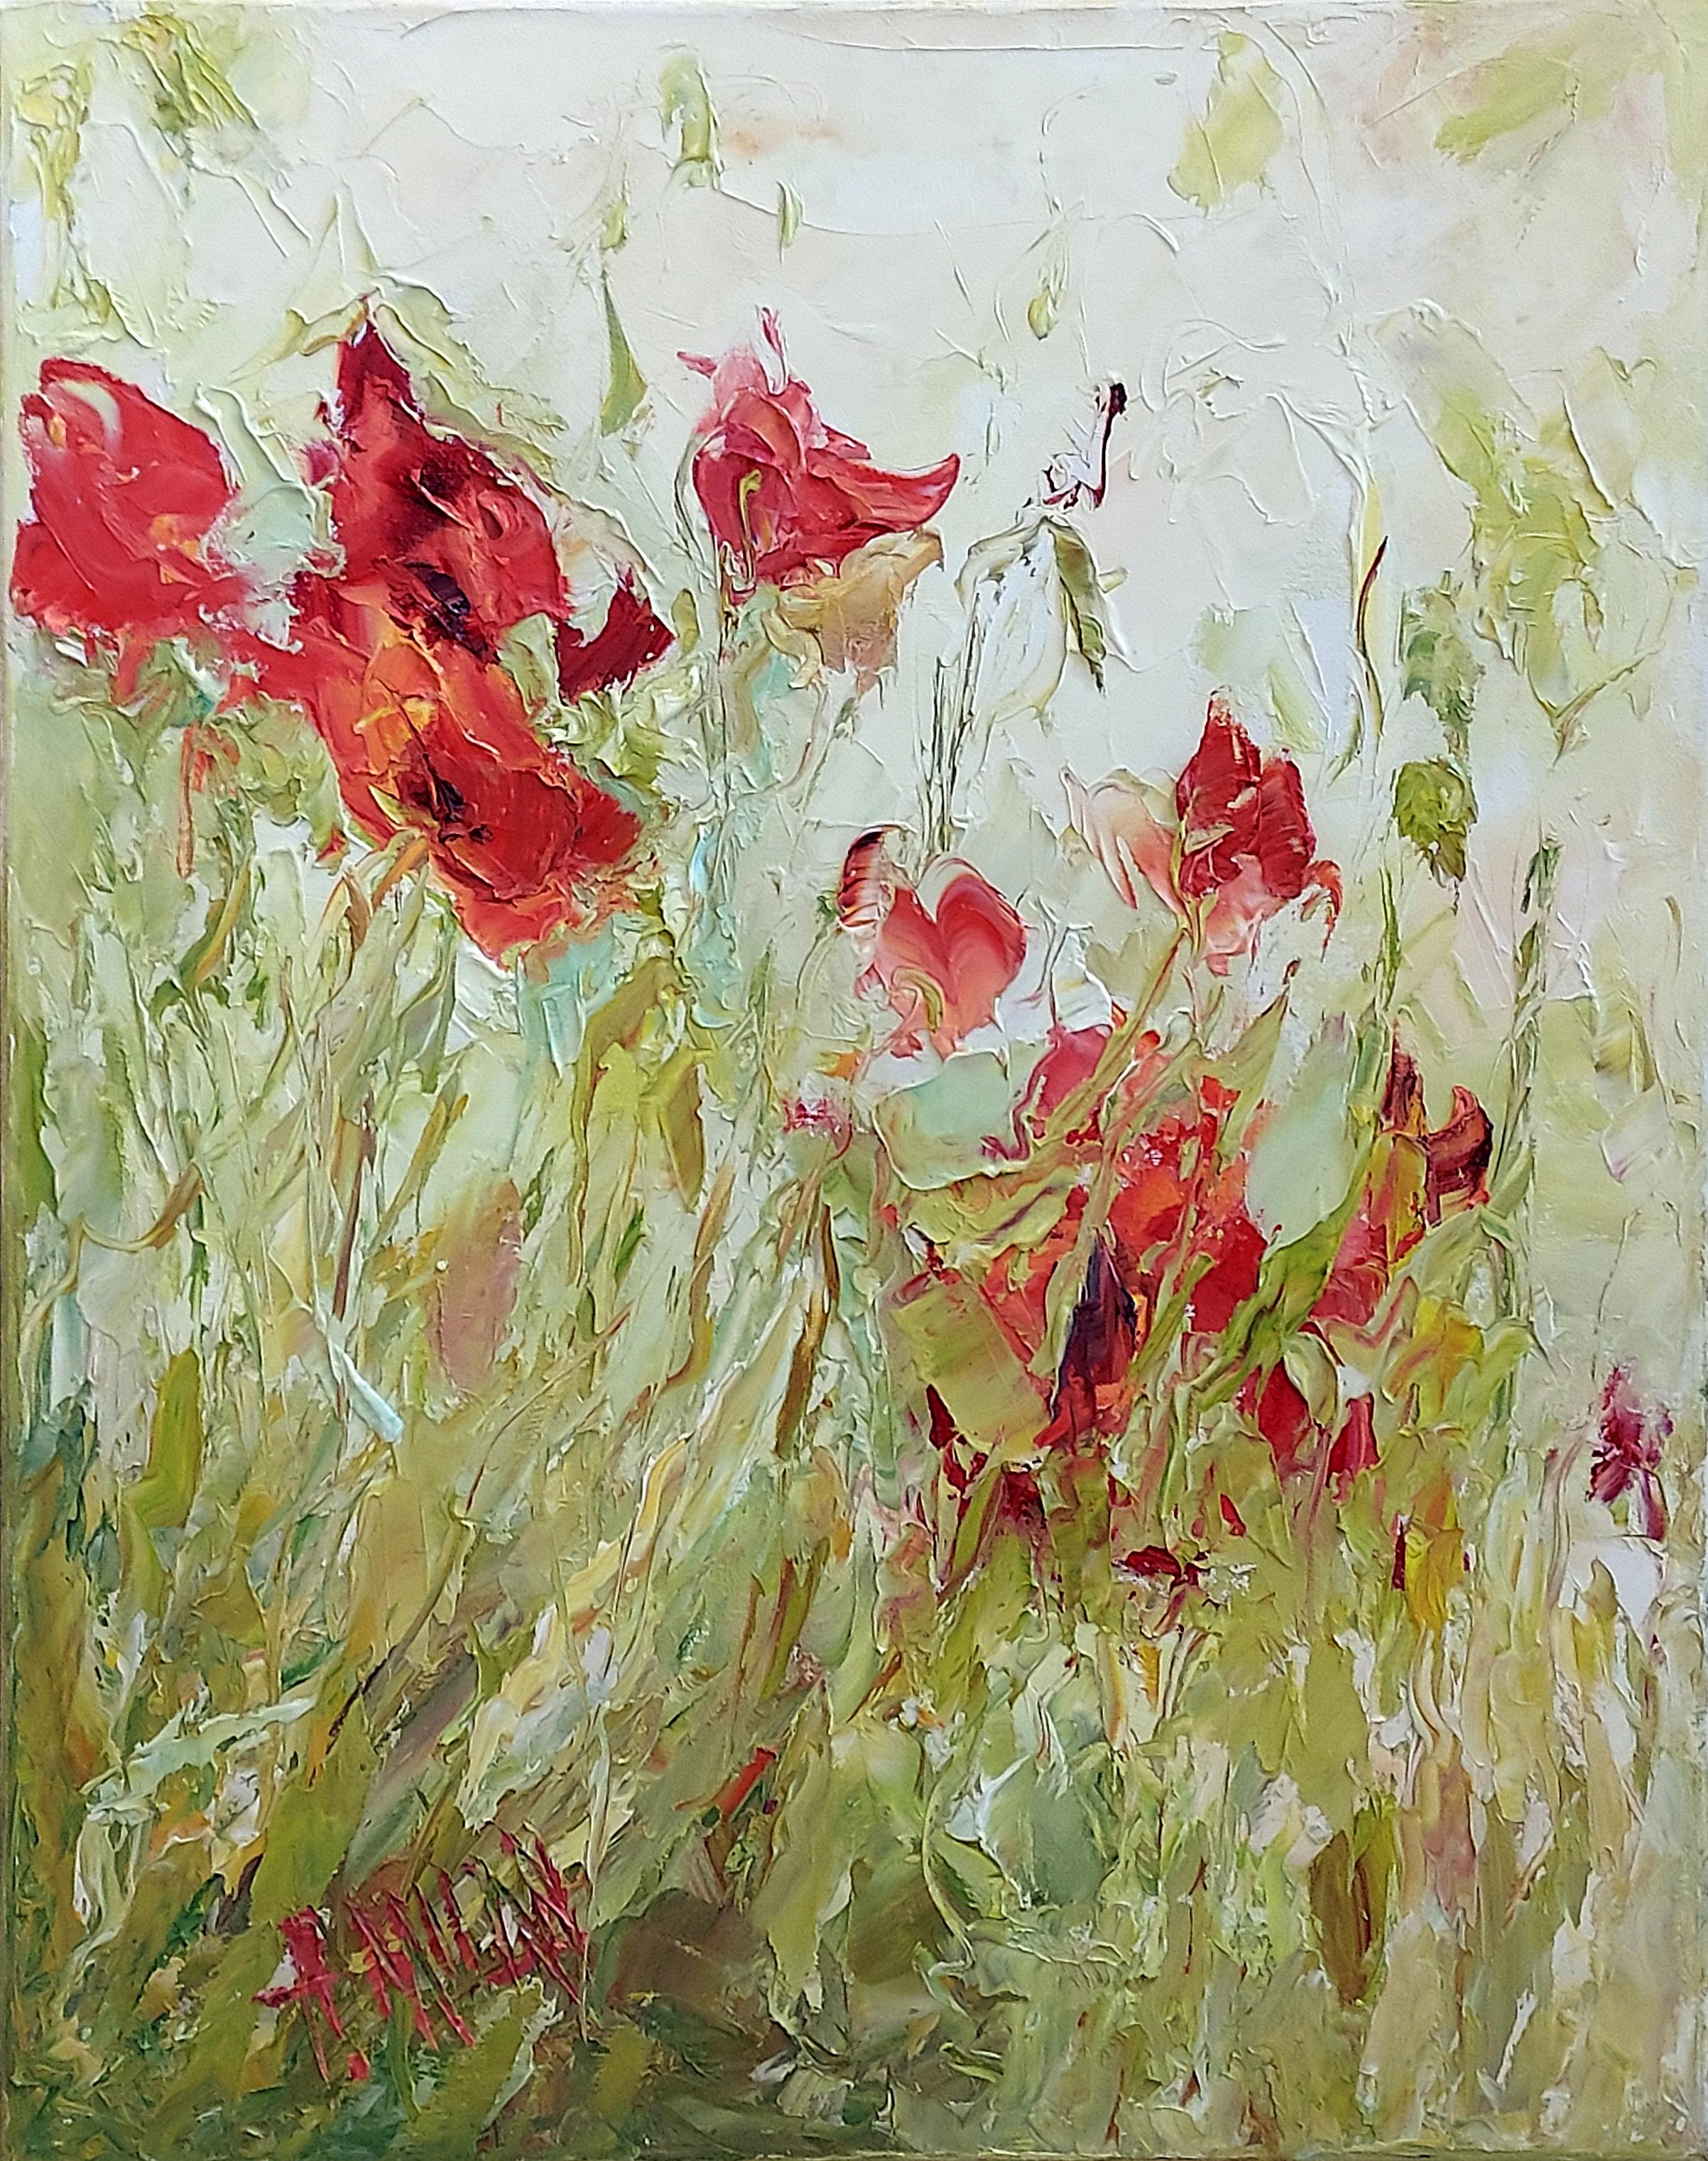 Dieses Werk, "Poppy #44", ist ein 20x16 großes Ölgemälde auf Leinwand der Künstlerin Henrietta Milan, das einen Blick in einen üppigen Garten voller blühender roter Mohnblumen zeigt. Hohe grüne Halme wiegen sich in der Sommerbrise, und der süße Duft